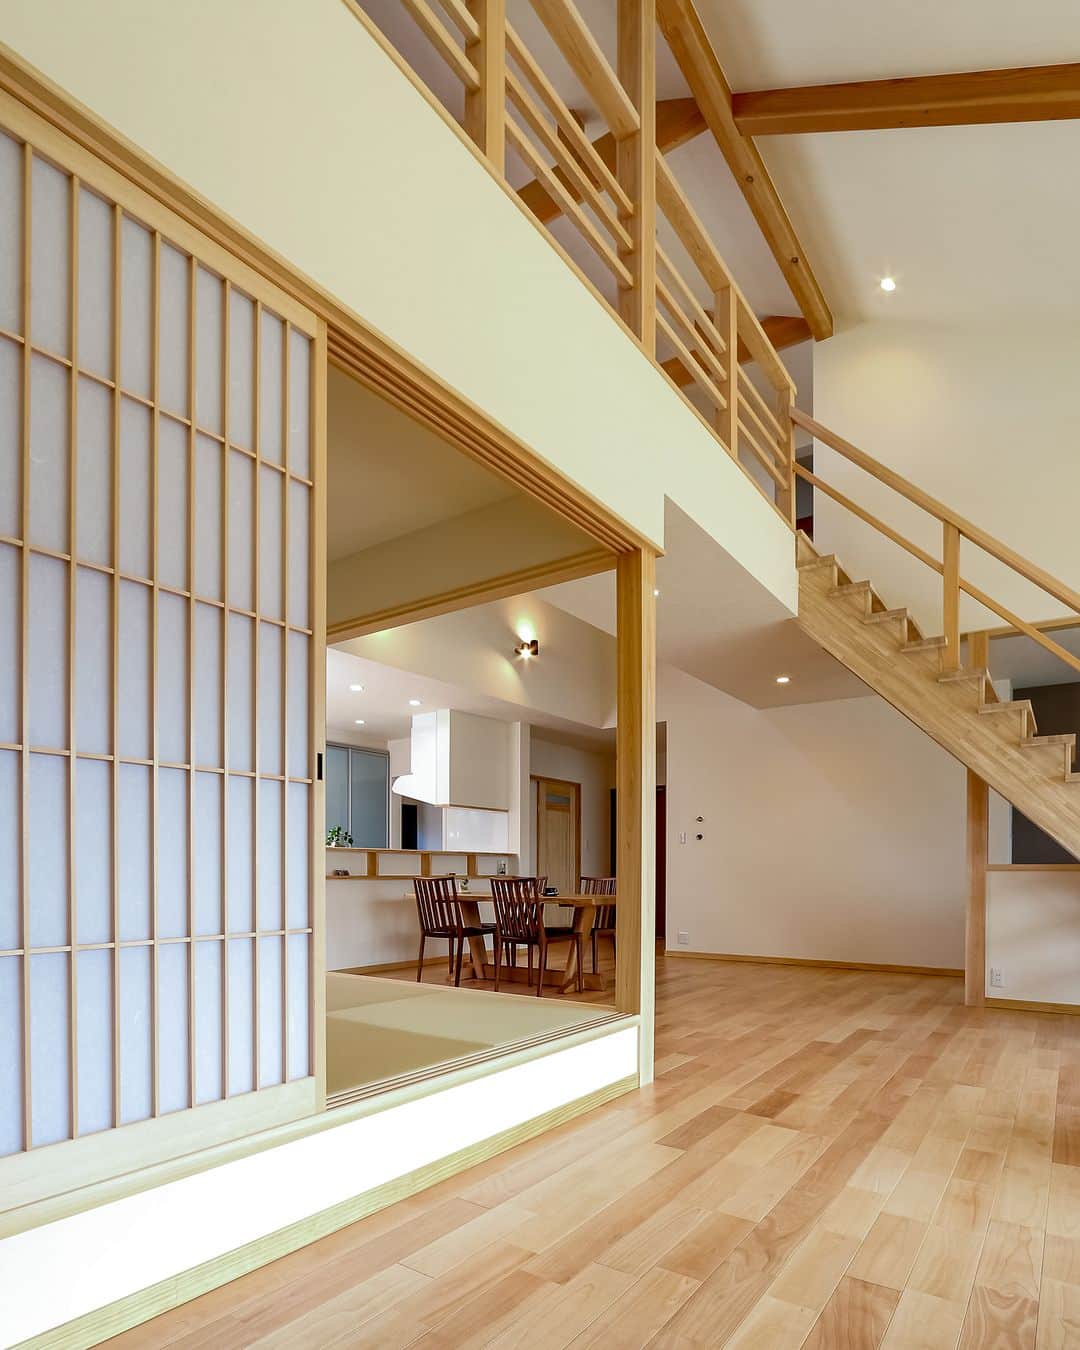 OKOCHI STYLE(香川県) のインスタグラム：「小上がり和室へと繋がるリビング  ーーーーーーーーー 香川県で木の家を建てる #大河内工務店  #施工事例 を多数ご紹介しています。 ▷ @okochi.komuten  創業1953年。 #上質な家 をていねいに。 #自然素材 と技術にこだわった家づくりをしています。  🗾施工エリア 香川県・愛媛県（四国中央市） その他エリアはご相談ください  お問い合わせやご質問は DM、コメント、HPにてお気軽にお問い合わせください。  ーーーーーーーーー 資材倉庫をリノベーションした #わが家ギャラリー木きん堂 ギャラリーのご案内やcafeの情報をお届けします🌟 ▷ @mokkindo.cafe ーーーーーーーーー  #香川県 で #注文住宅 を建てるなら大河内工務店 ▷ @okochi.komuten  #一級建築士事務所 #自由設計 #木の家 #木の家づくり #自然素材の家 #無垢材 #新築 #新築一戸建て #マイホーム #マイホーム計画 #インテリア #家づくり #工務店だからつくれる家 #暮らしを楽しむ #香川新築 #香川注文住宅 #香川イベント #香川の家 #香川県工務店   #小上がり和室」